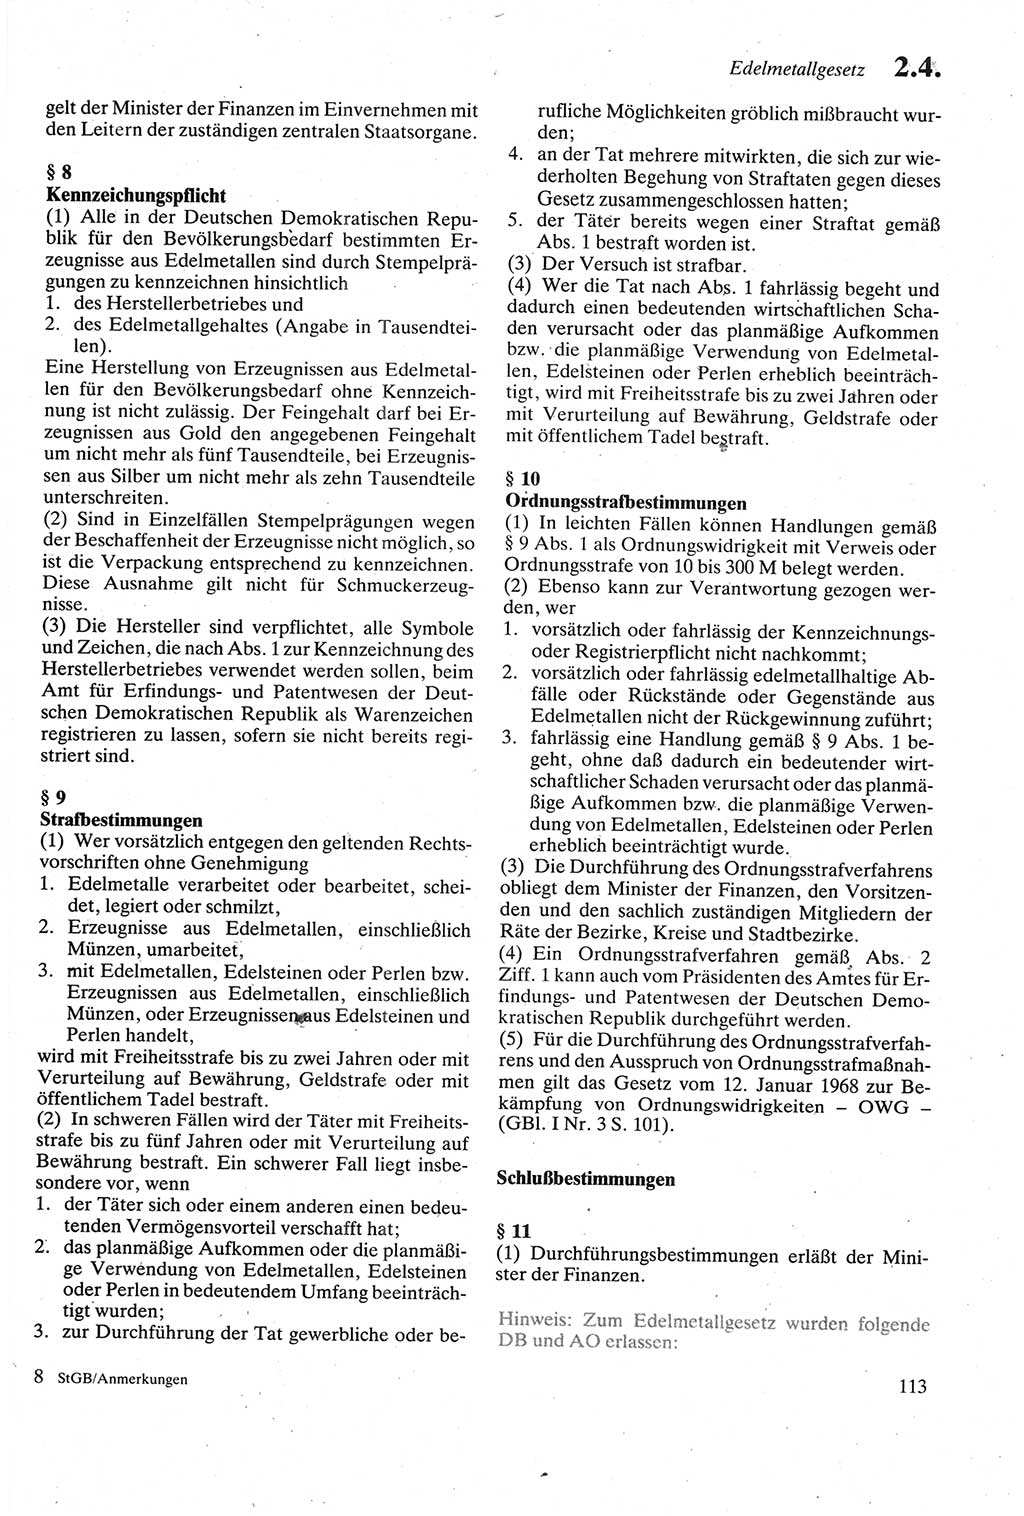 Strafgesetzbuch (StGB) der Deutschen Demokratischen Republik (DDR) sowie angrenzende Gesetze und Bestimmungen 1979, Seite 113 (StGB DDR Ges. Best. 1979, S. 113)